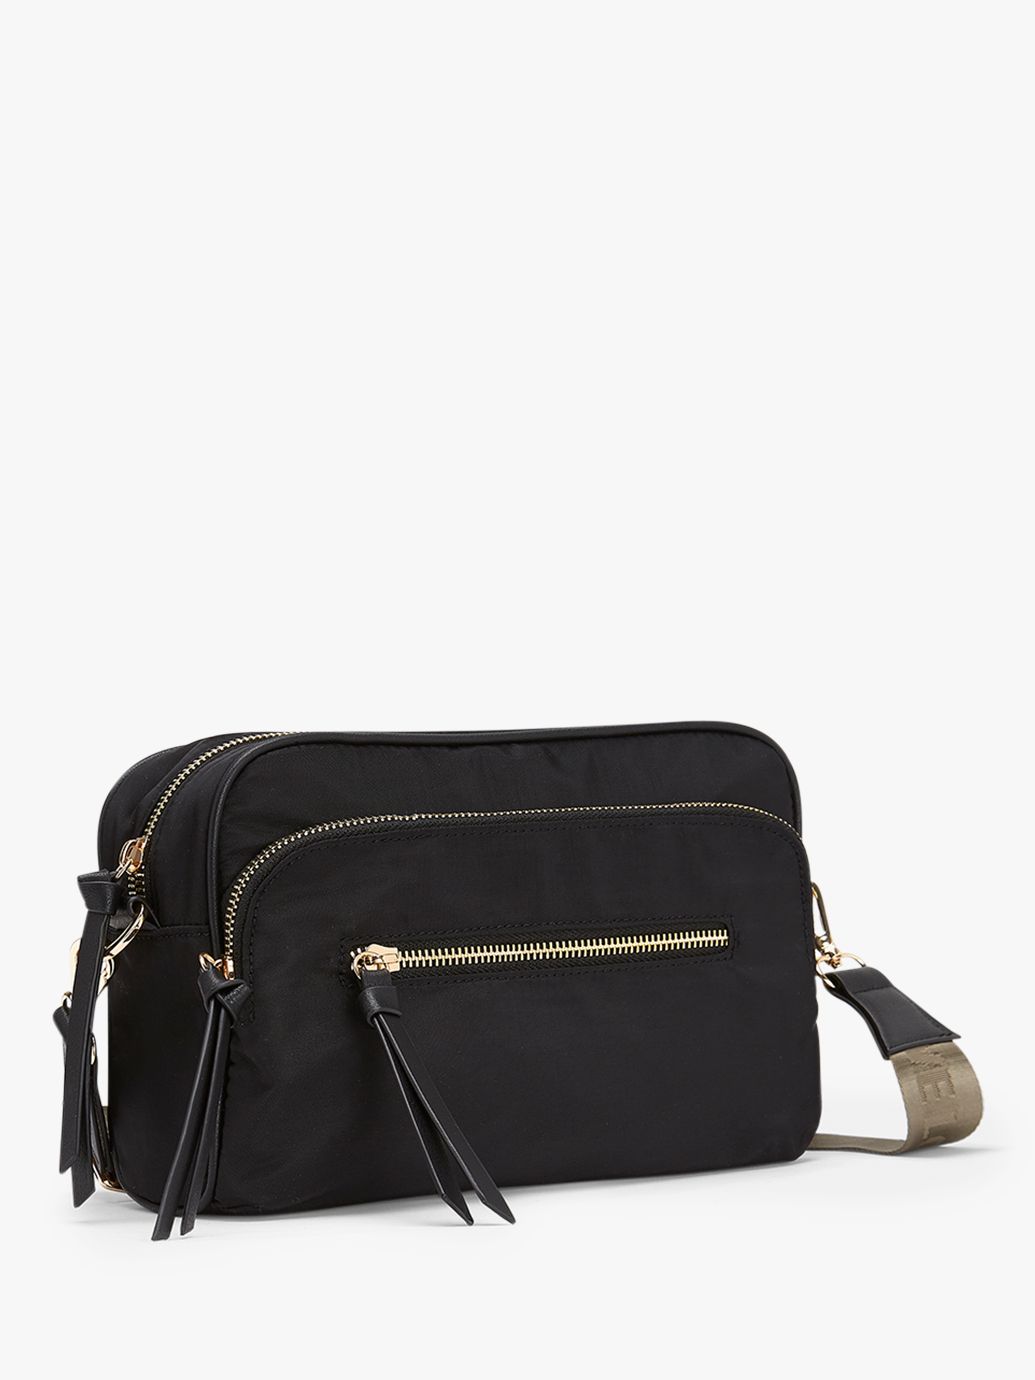 Mint Velvet Nylon Cross Body Bag, Black at John Lewis & Partners